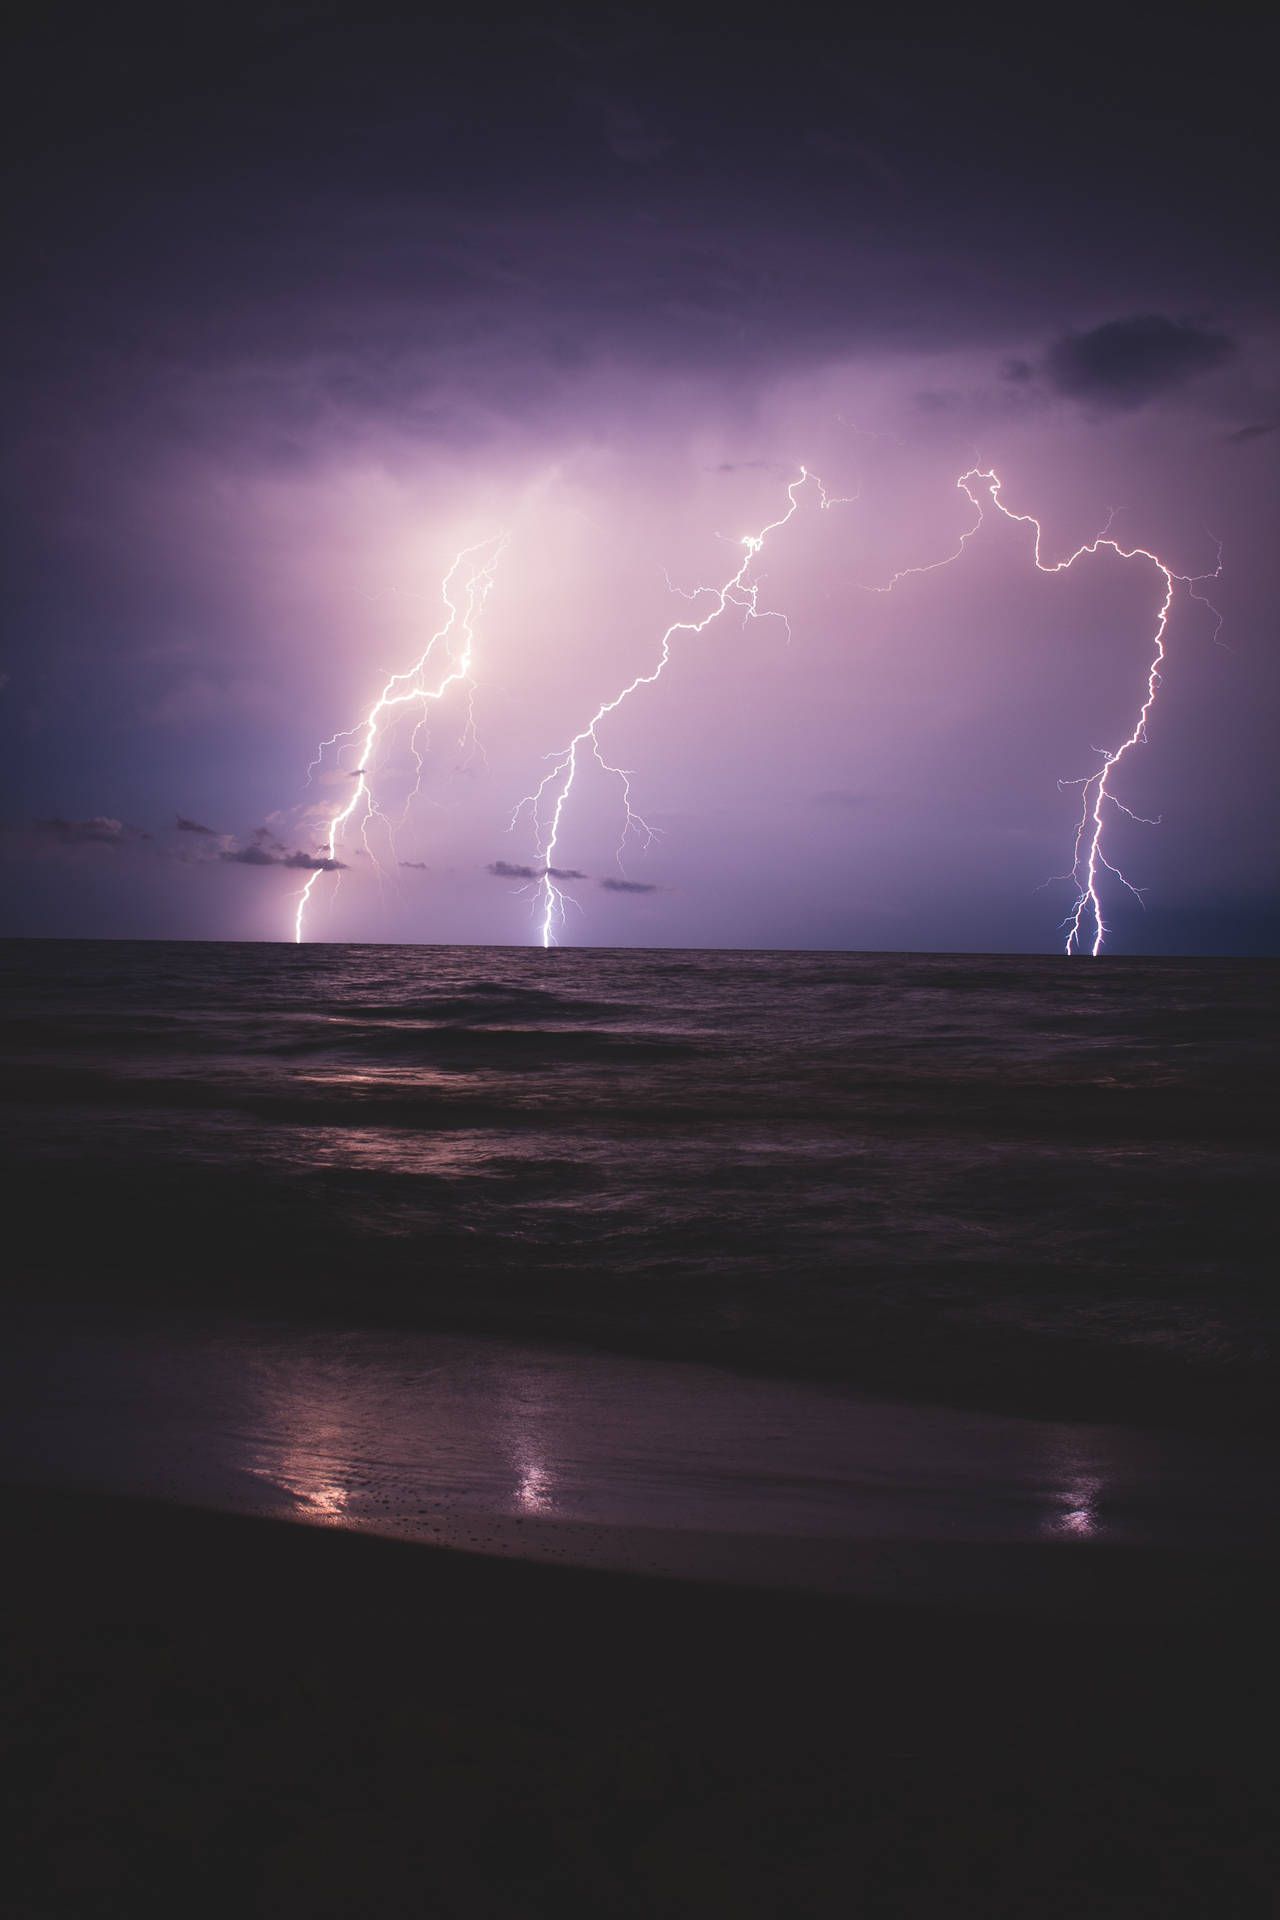  Elektrischer Strom Hintergrundbild 1280x1920. Downloaden Einwunderschöner Gewittersturm Am Strand. Wallpaper